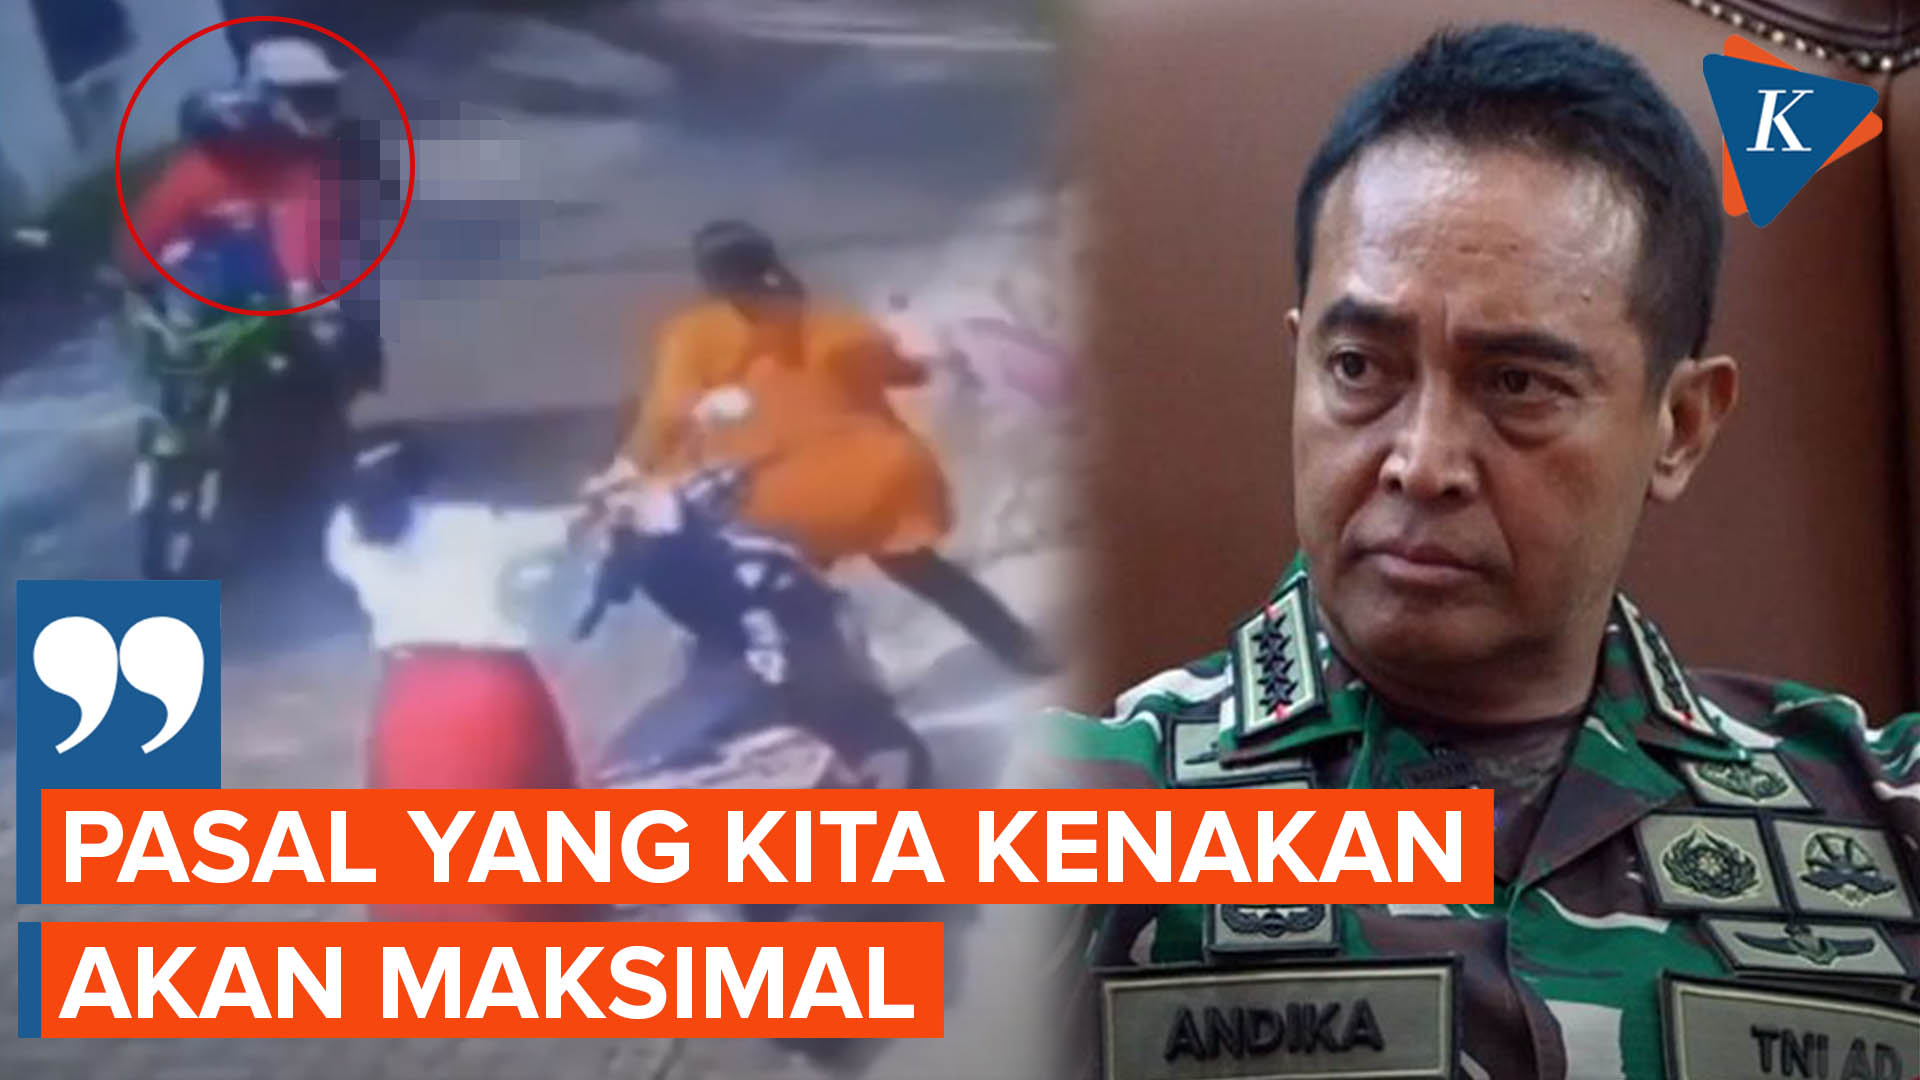 Panglima TNI Siapkan Pasal Berlapis ke Kopda M yang Diduga Terlibat Penembakan Istri di Semarang